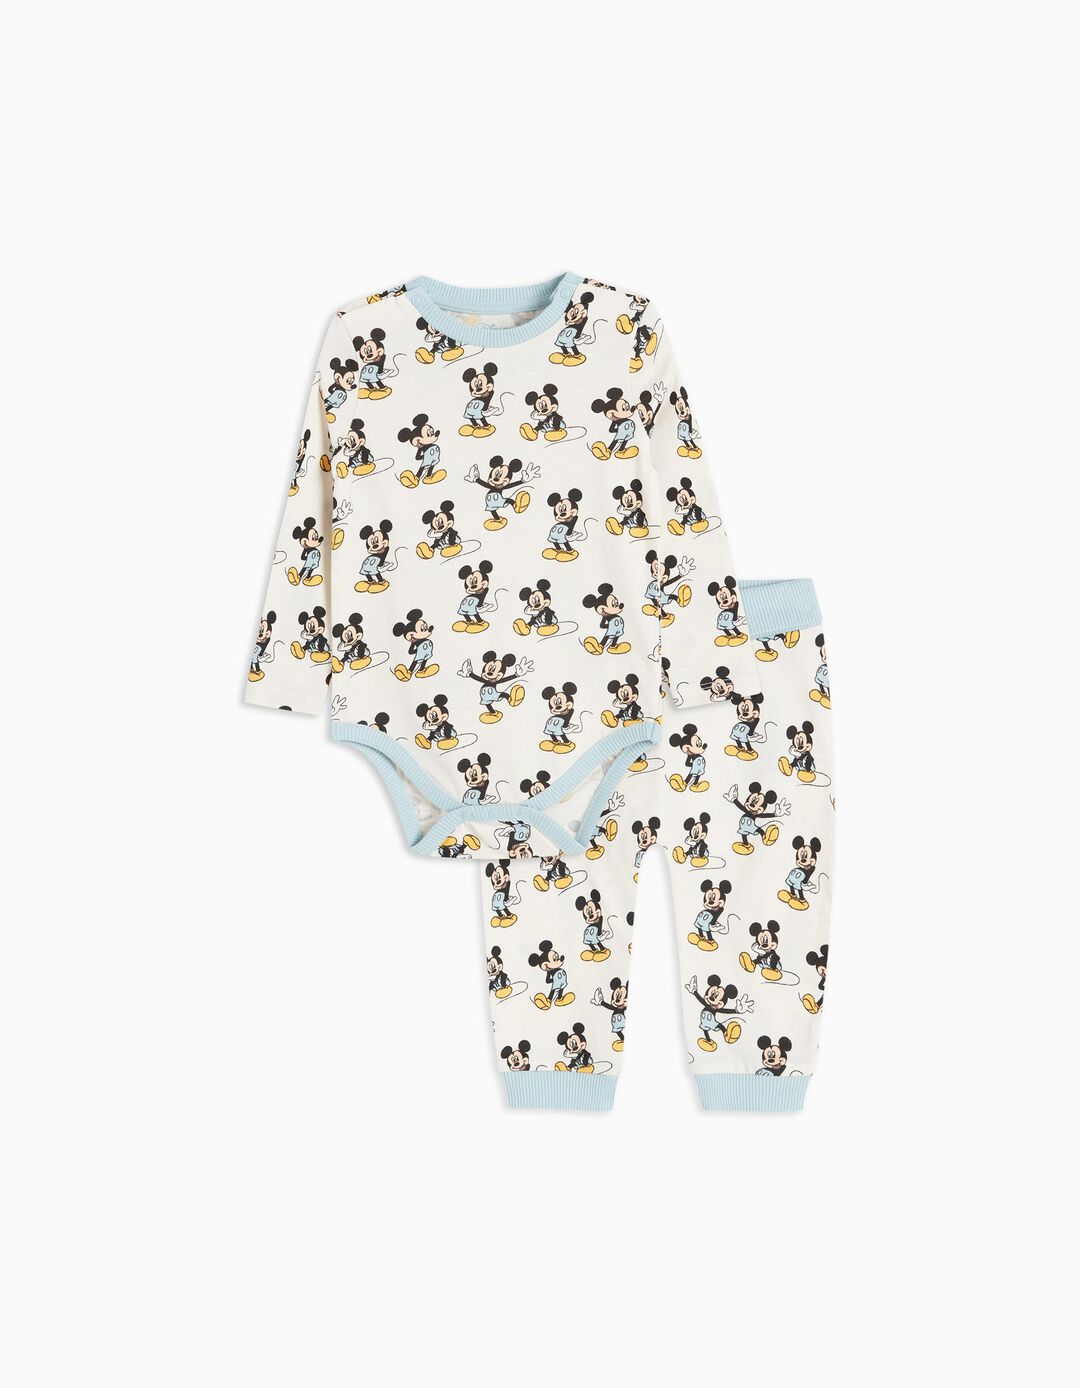 Pijama 'Disney', Bebé Menino, Multicor